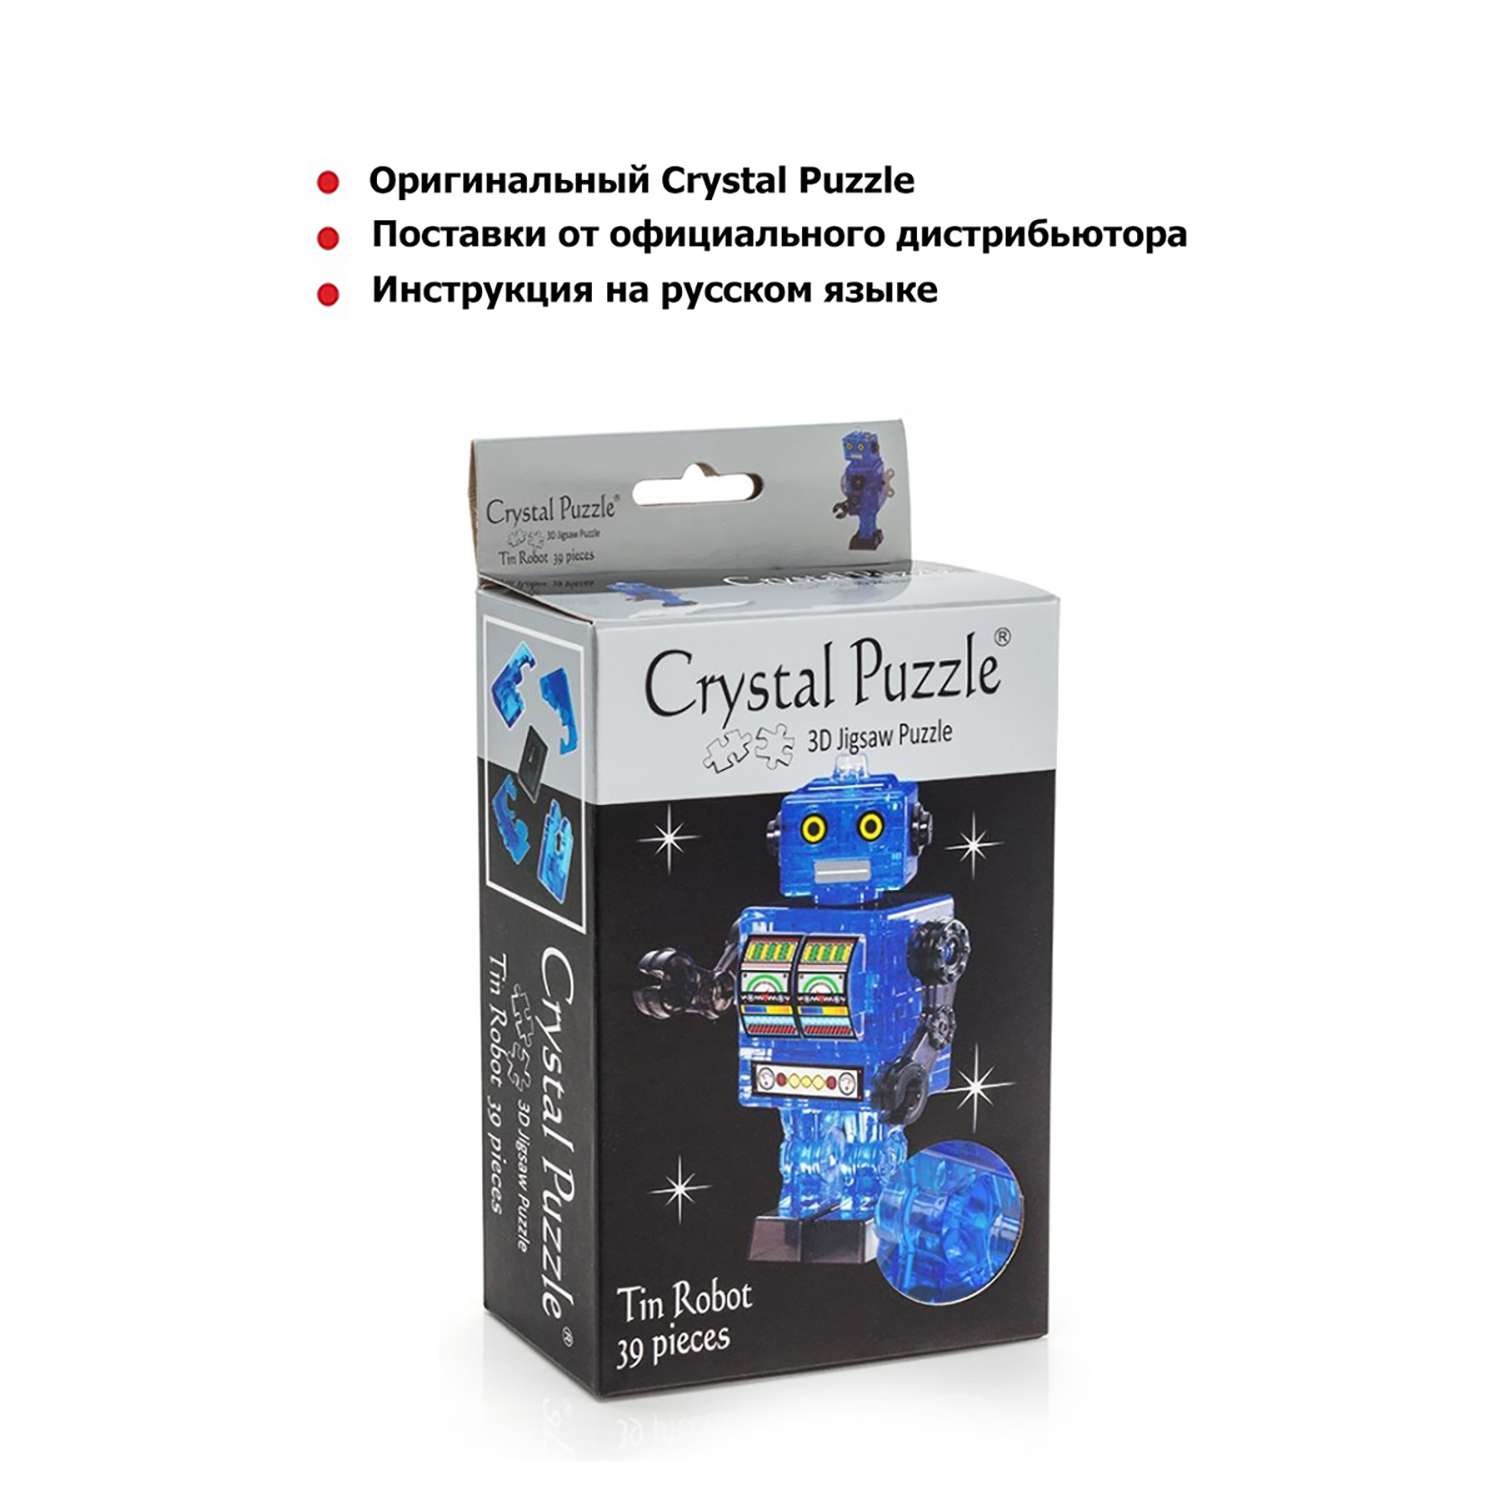 3D-пазл Crystal Puzzle IQ игра для детей кристальный Робот cиний 39 деталей - фото 3